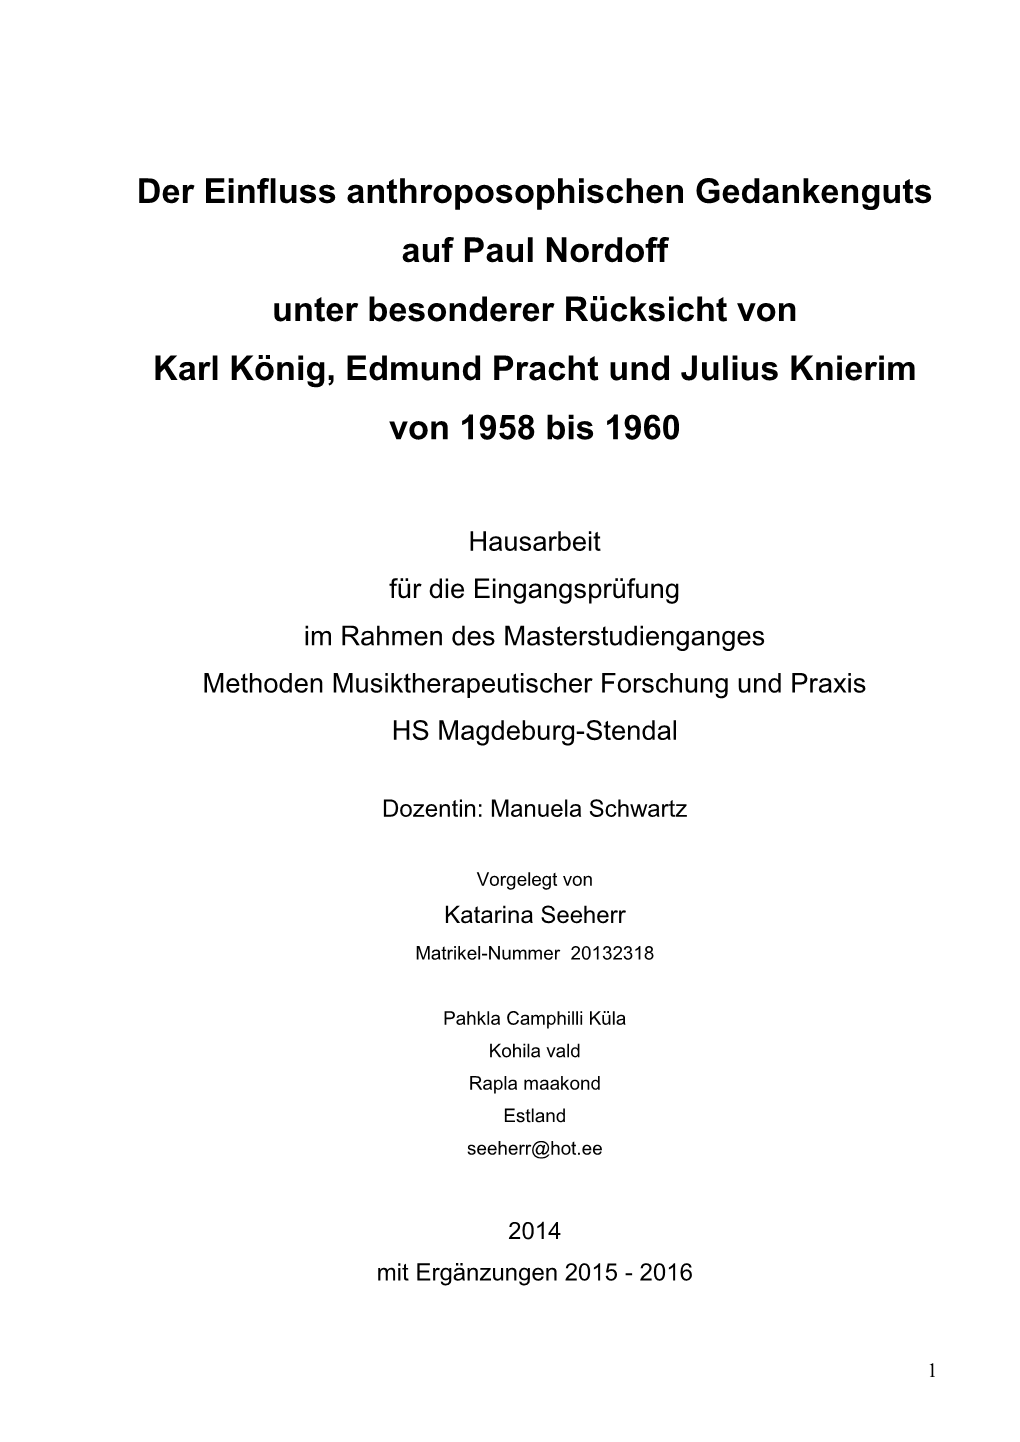 Der Einfluss Anthroposophischen Gedankenguts Auf Paul Nordoff Unter Besonderer Rücksicht Von Karl König, Edmund Pracht Und Julius Knierim Von 1958 Bis 1960